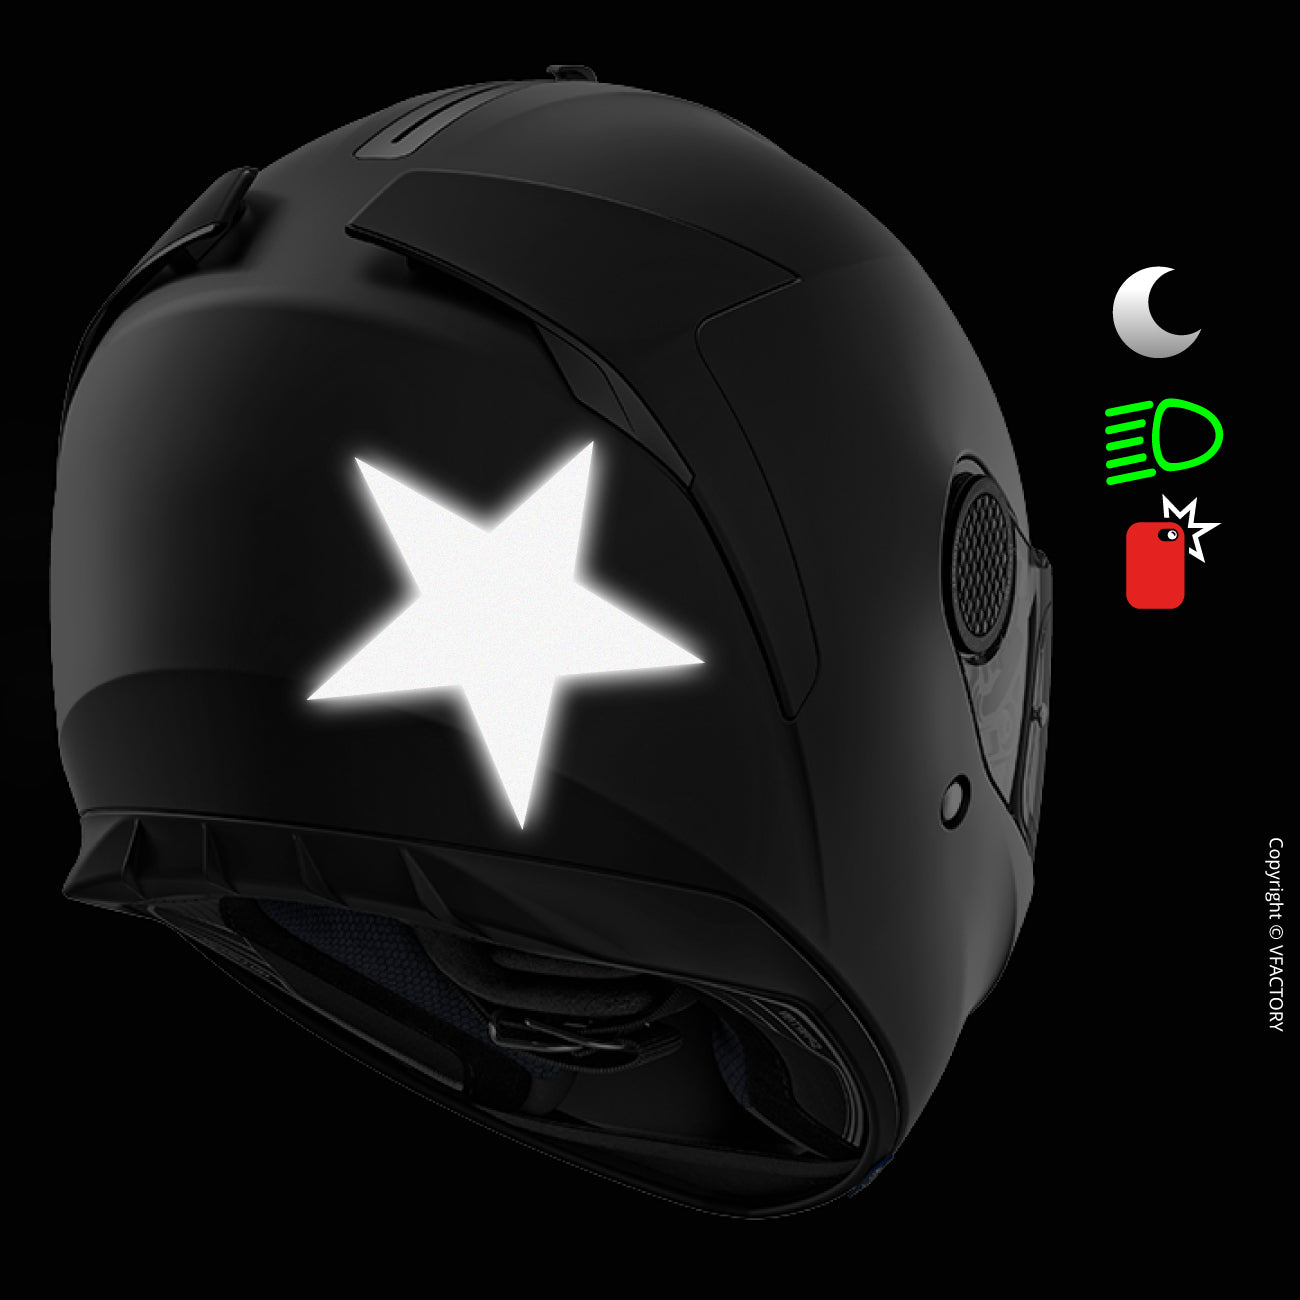 REFLECTIVE STAR™ - Sticker moto étoile réfléchissant 3M™ VFLUO 🇫🇷